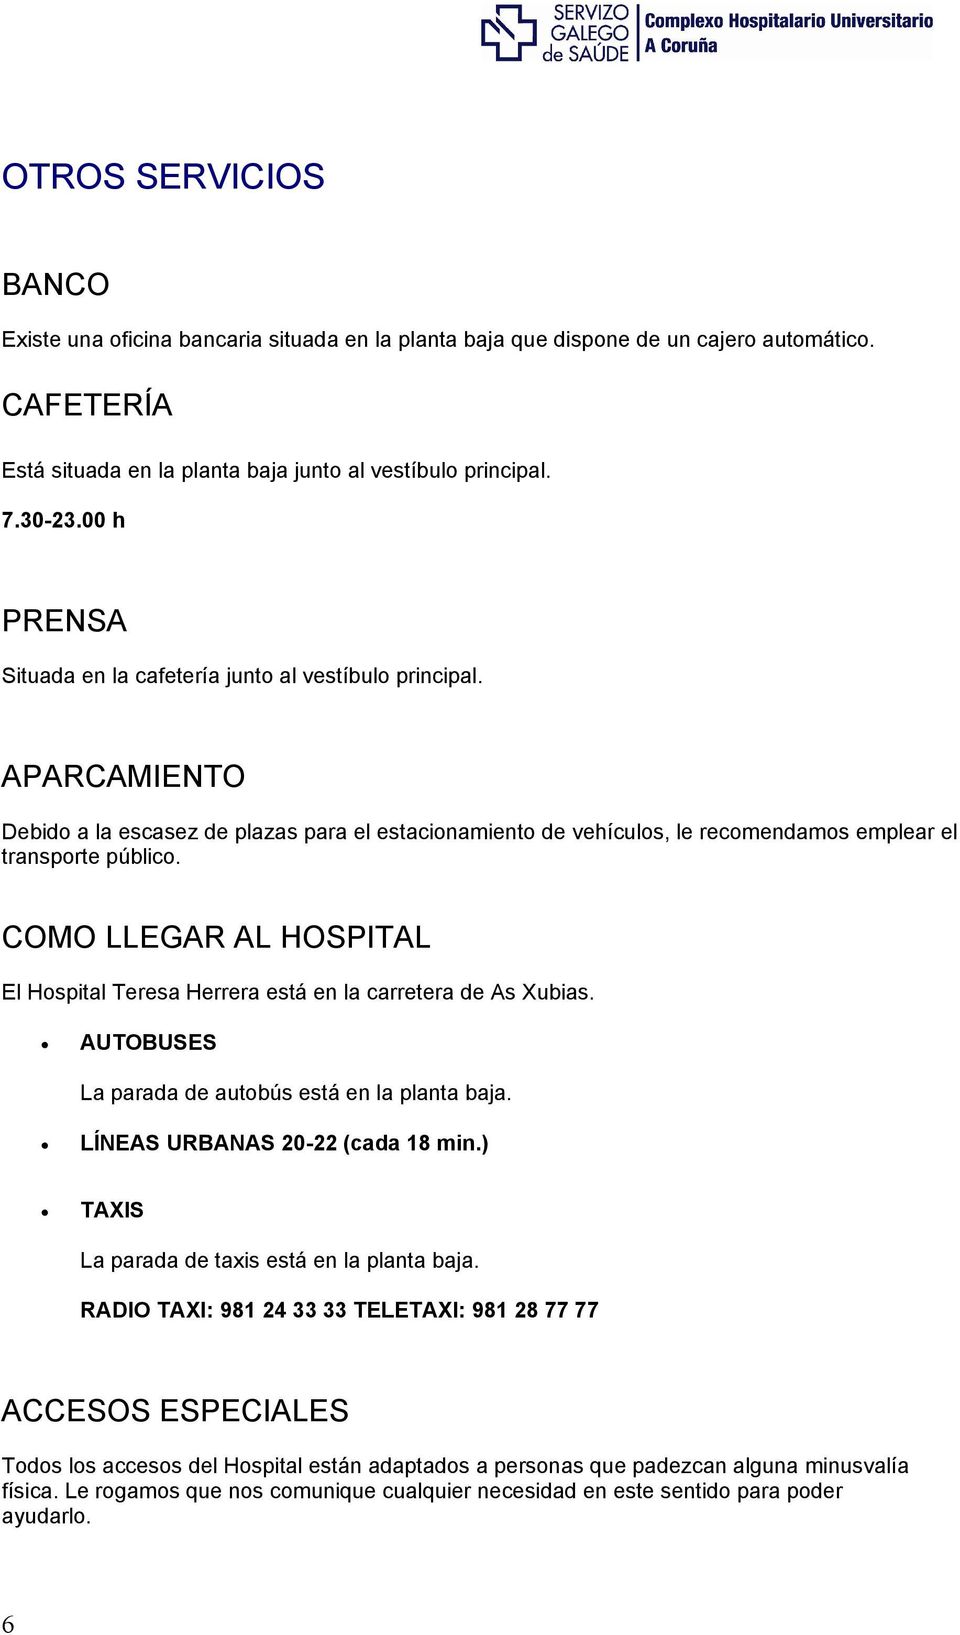 COMO LLEGAR AL HOSPITAL El Hospital Teresa Herrera está en la carretera de As Xubias. AUTOBUSES La parada de autobús está en la planta baja. LÍNEAS URBANAS 20-22 (cada 18 min.